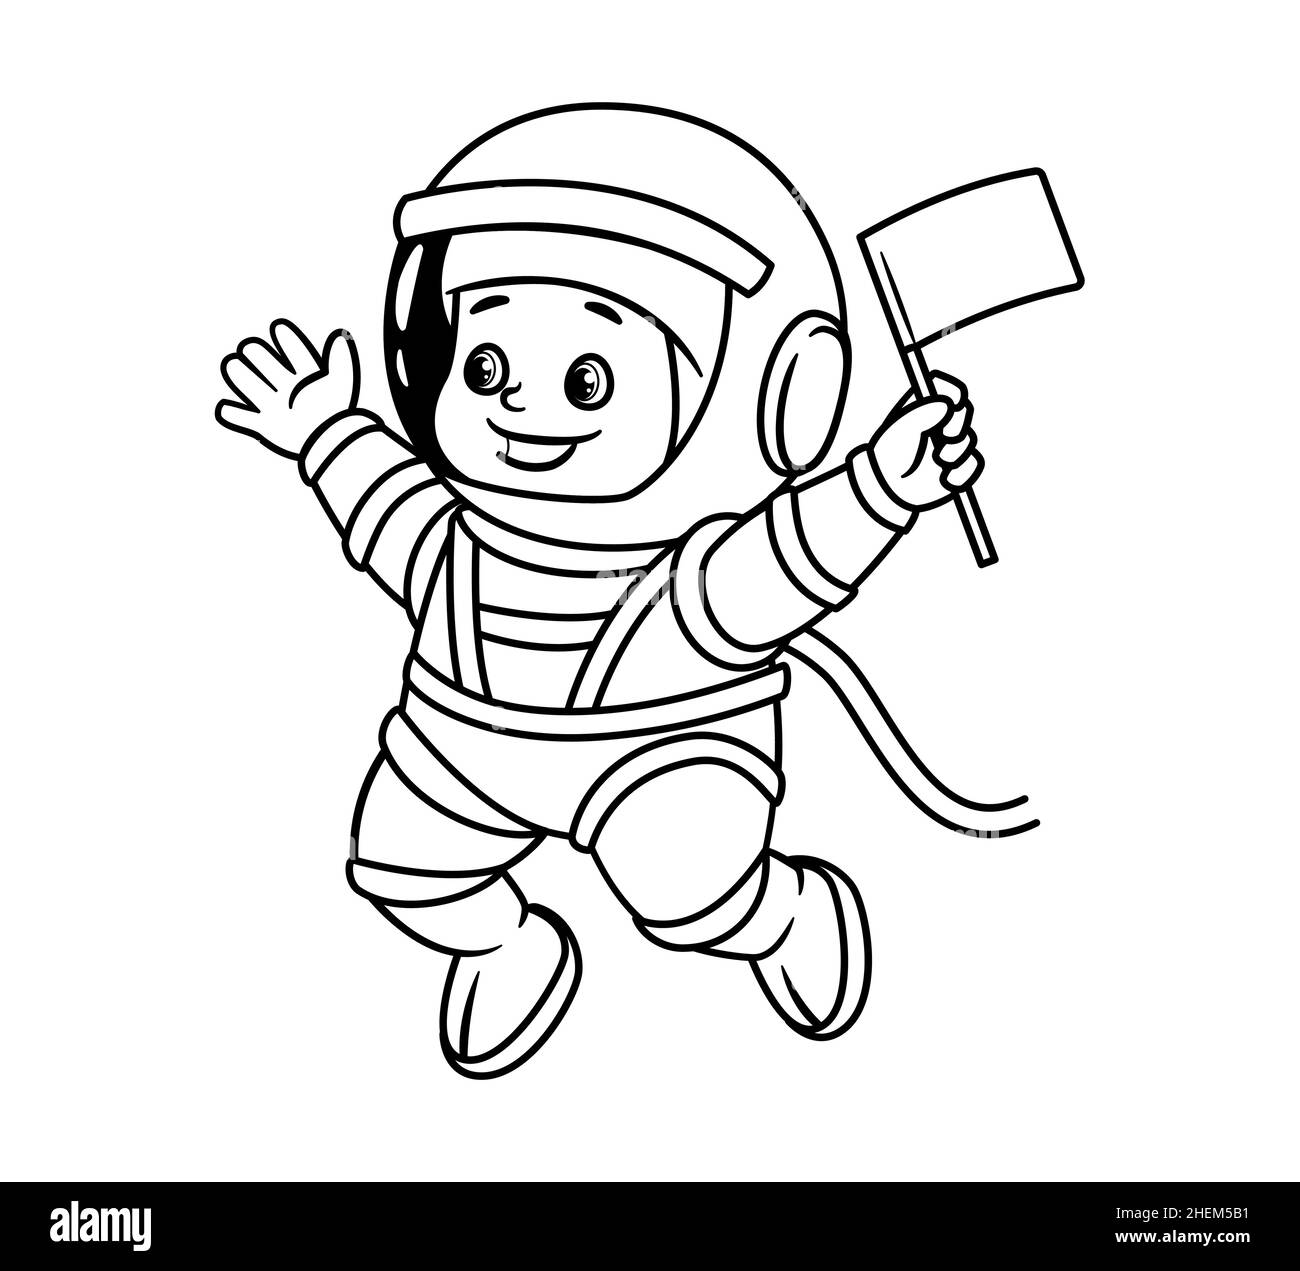 Livre de coloriage : un tout-petit astronaute dans un casque et un vaisseau spatial fait le drapeau d'un pionnier.Illustration vectorielle de style dessin animé, isolée en noir et blanc Illustration de Vecteur